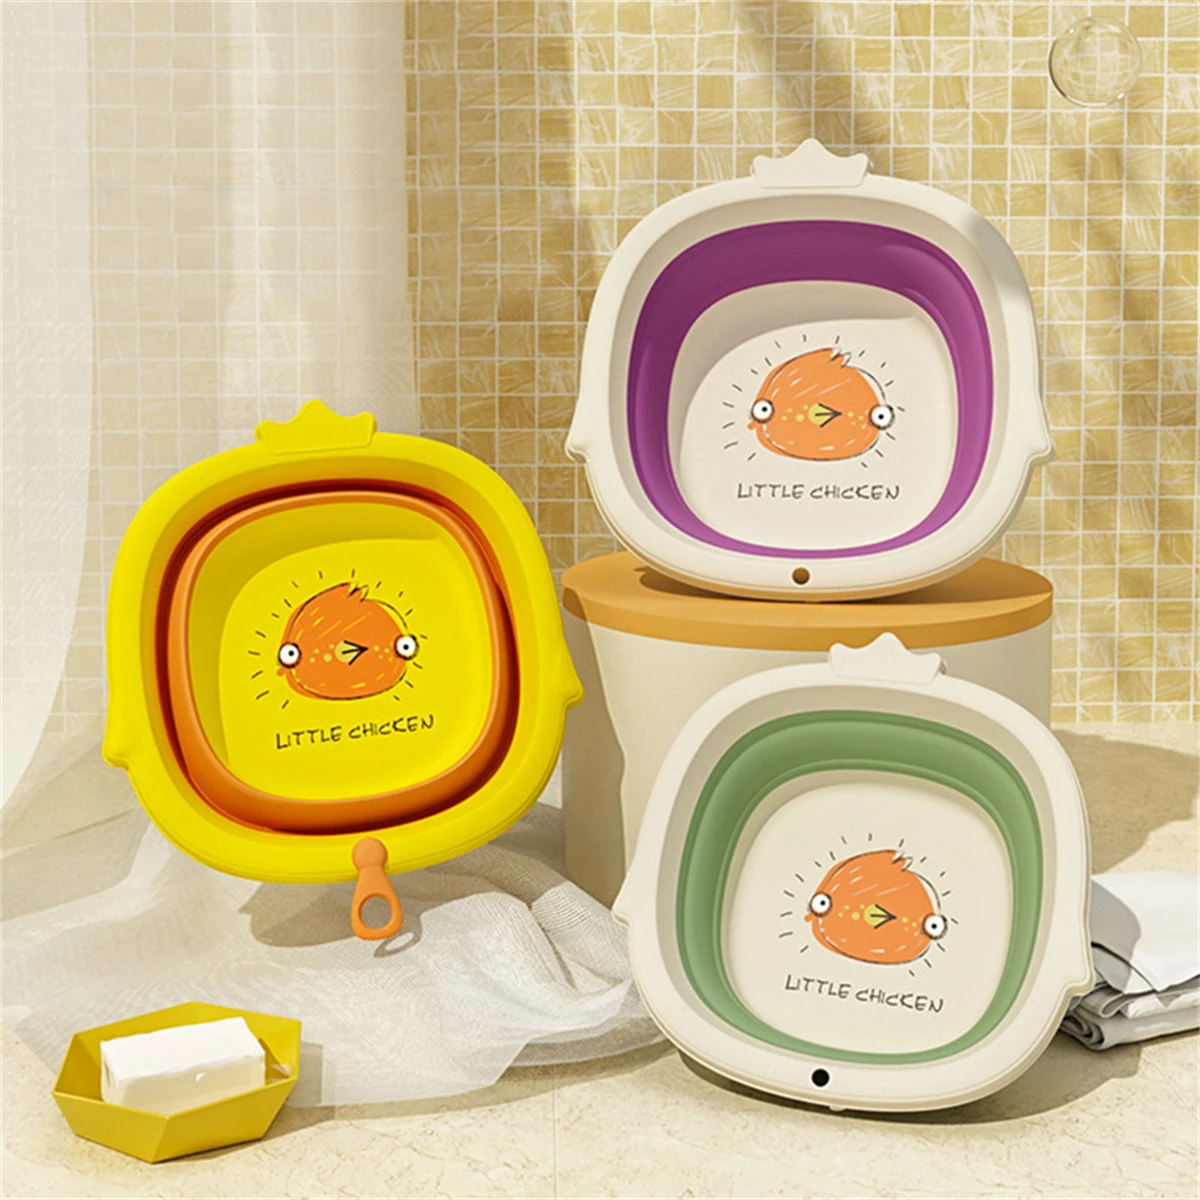 

Portable Plastic Foldable Infant Baby Newborn Babies Bath Tubs Bathtub Washbowl Feet-Washing Basin